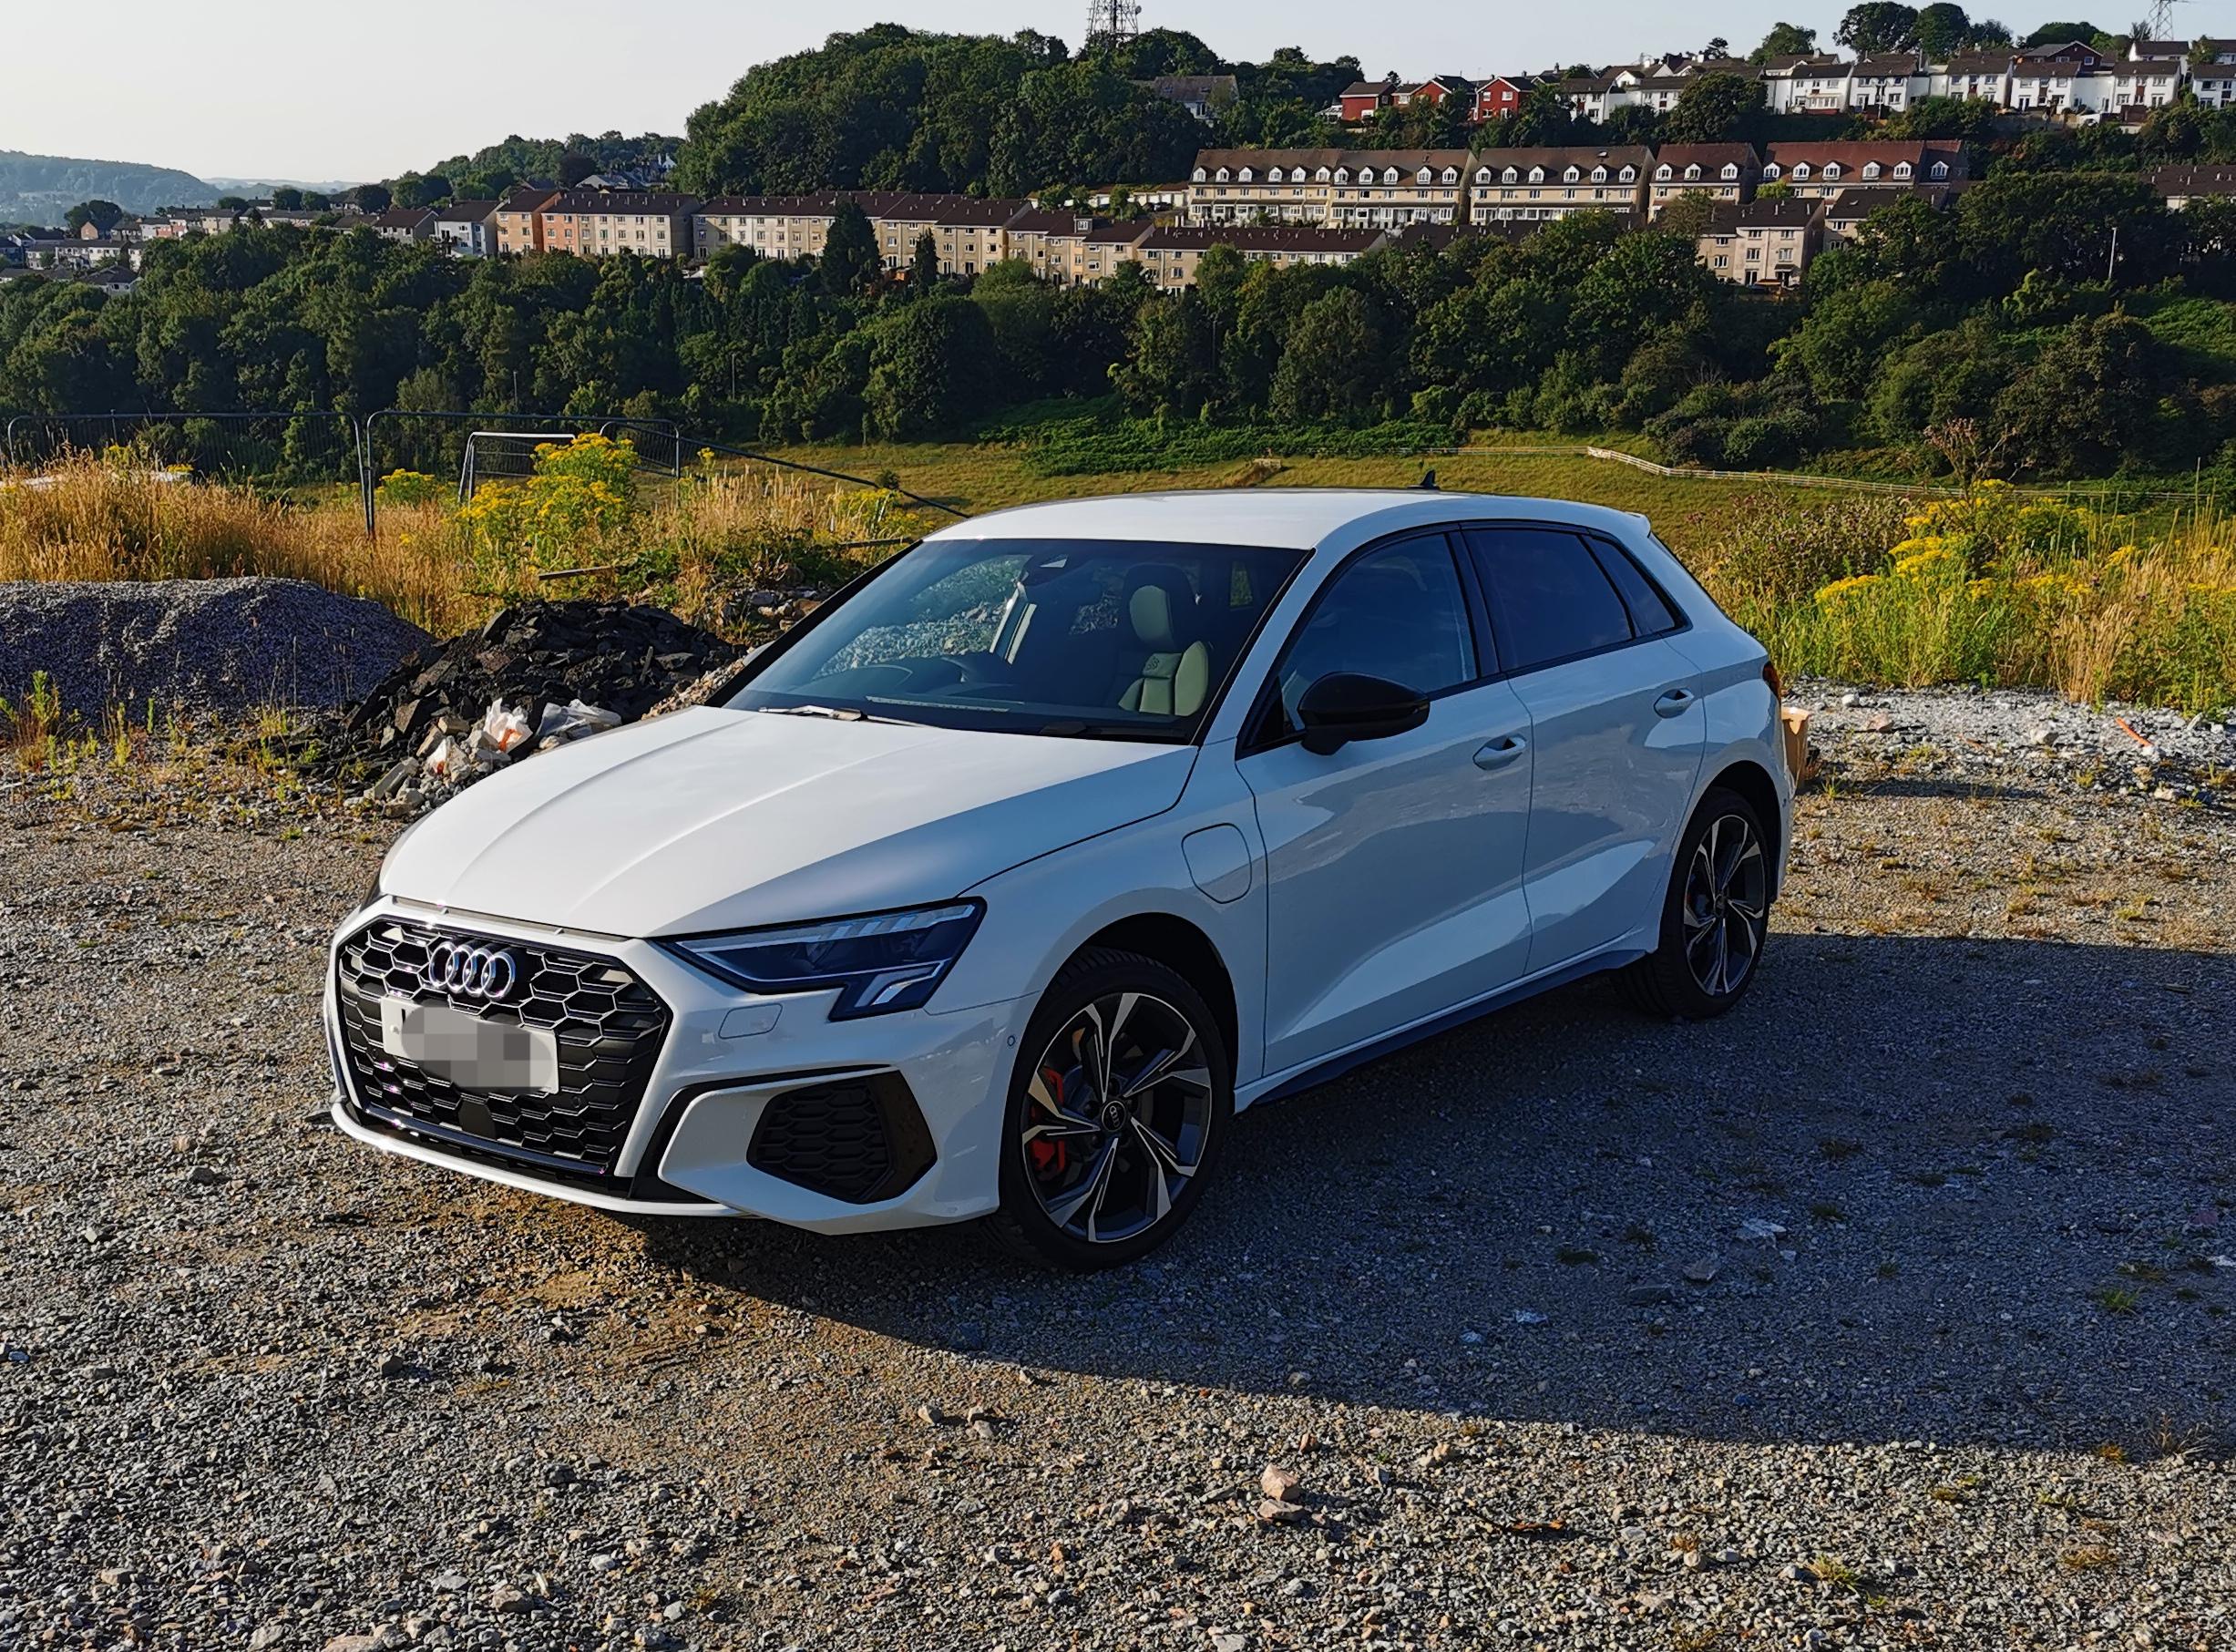 New car tomorrow - Audi A3 (8Y) Forum - Audi Owners Club (UK)